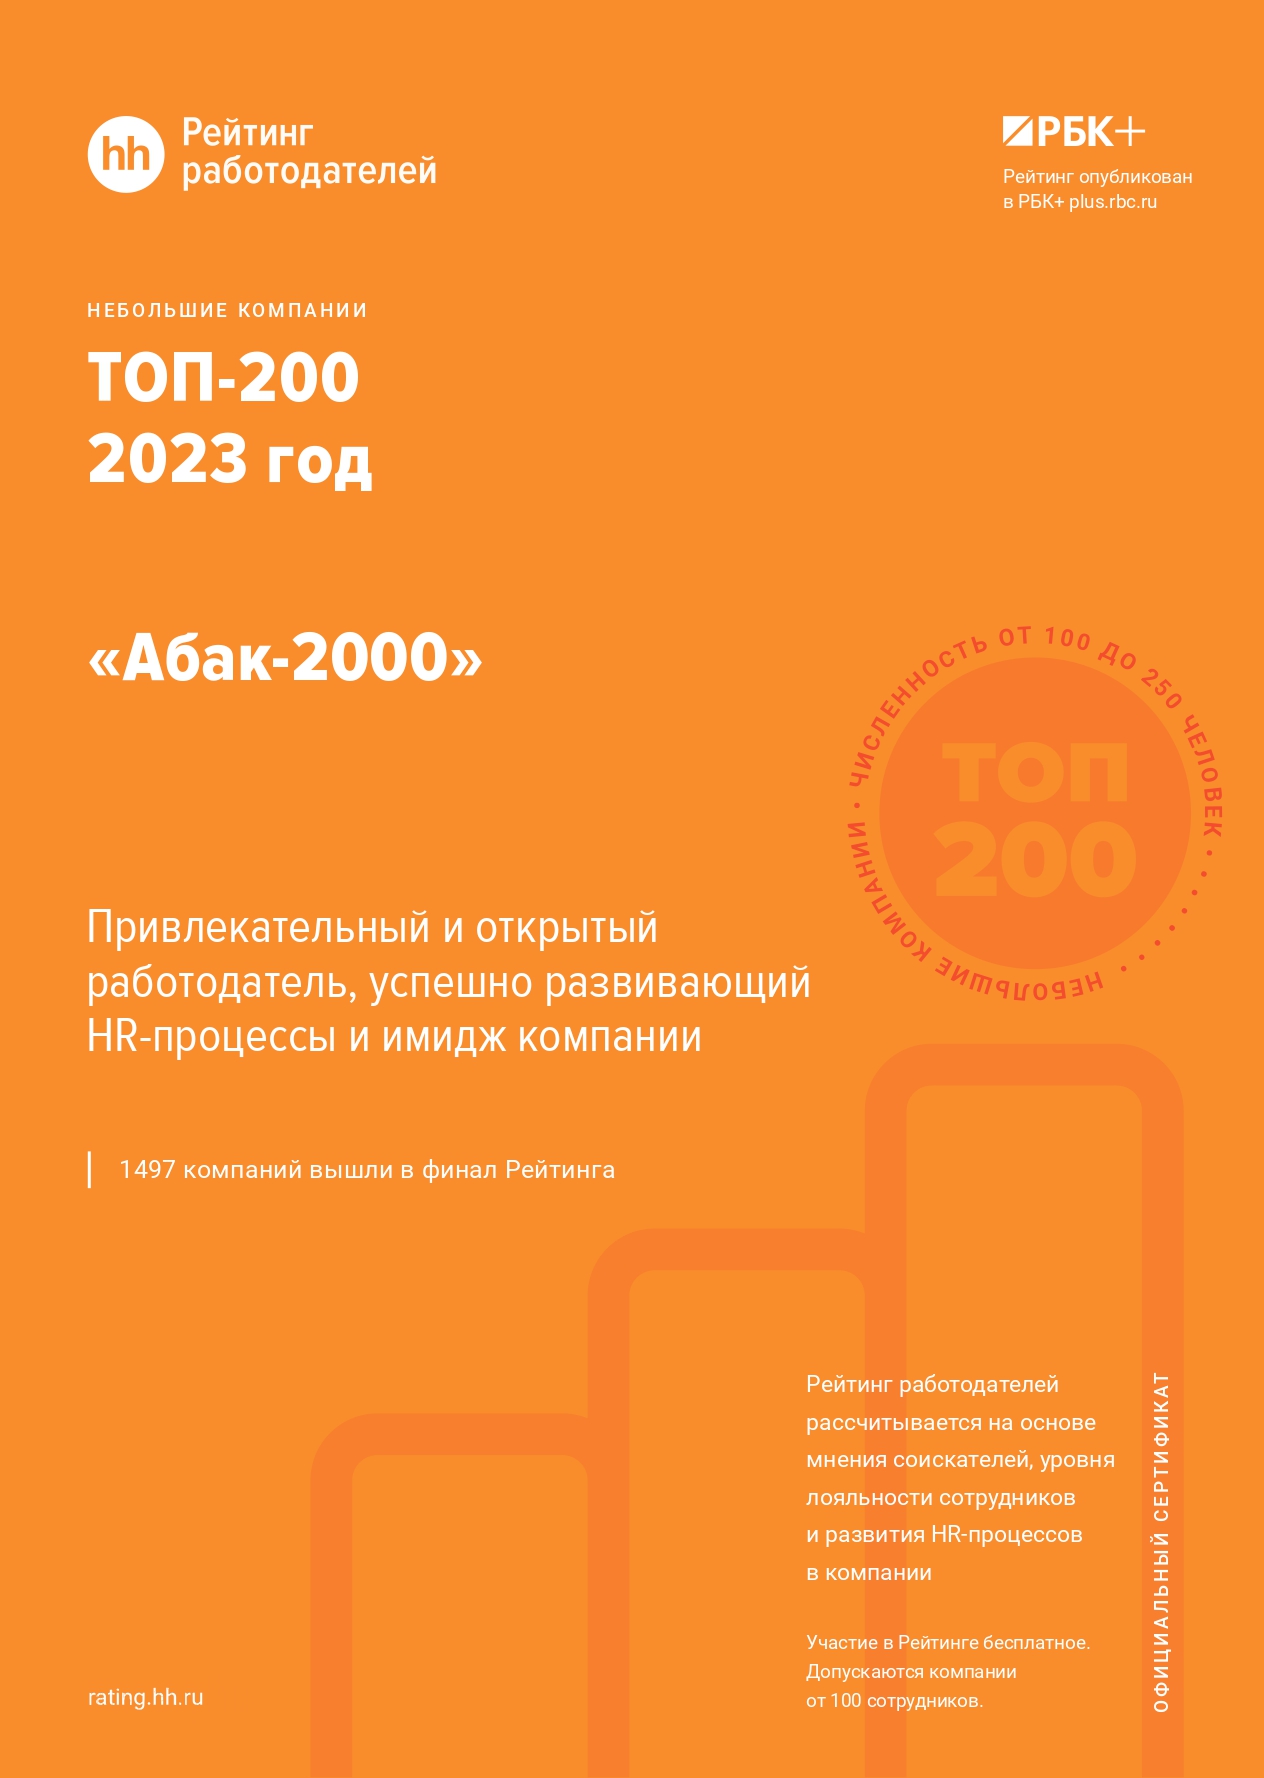 Абак-2000 попал в рейтинг работодателей от HeadHunter